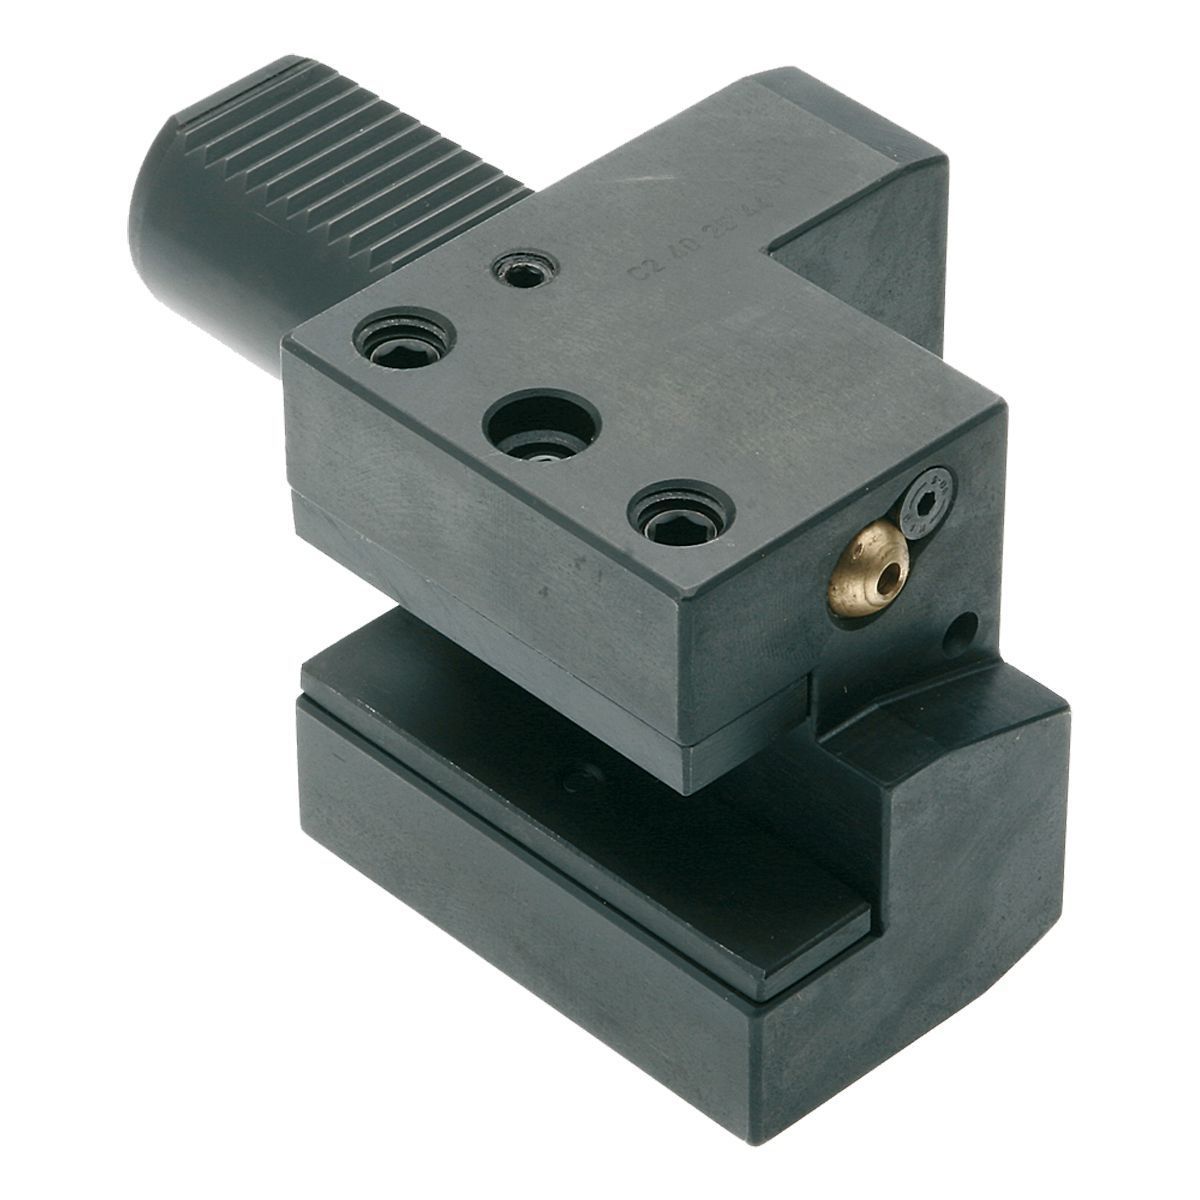 Axial-Werkzeughalter C2-50x32 DIN 69880 (ISO 10889)